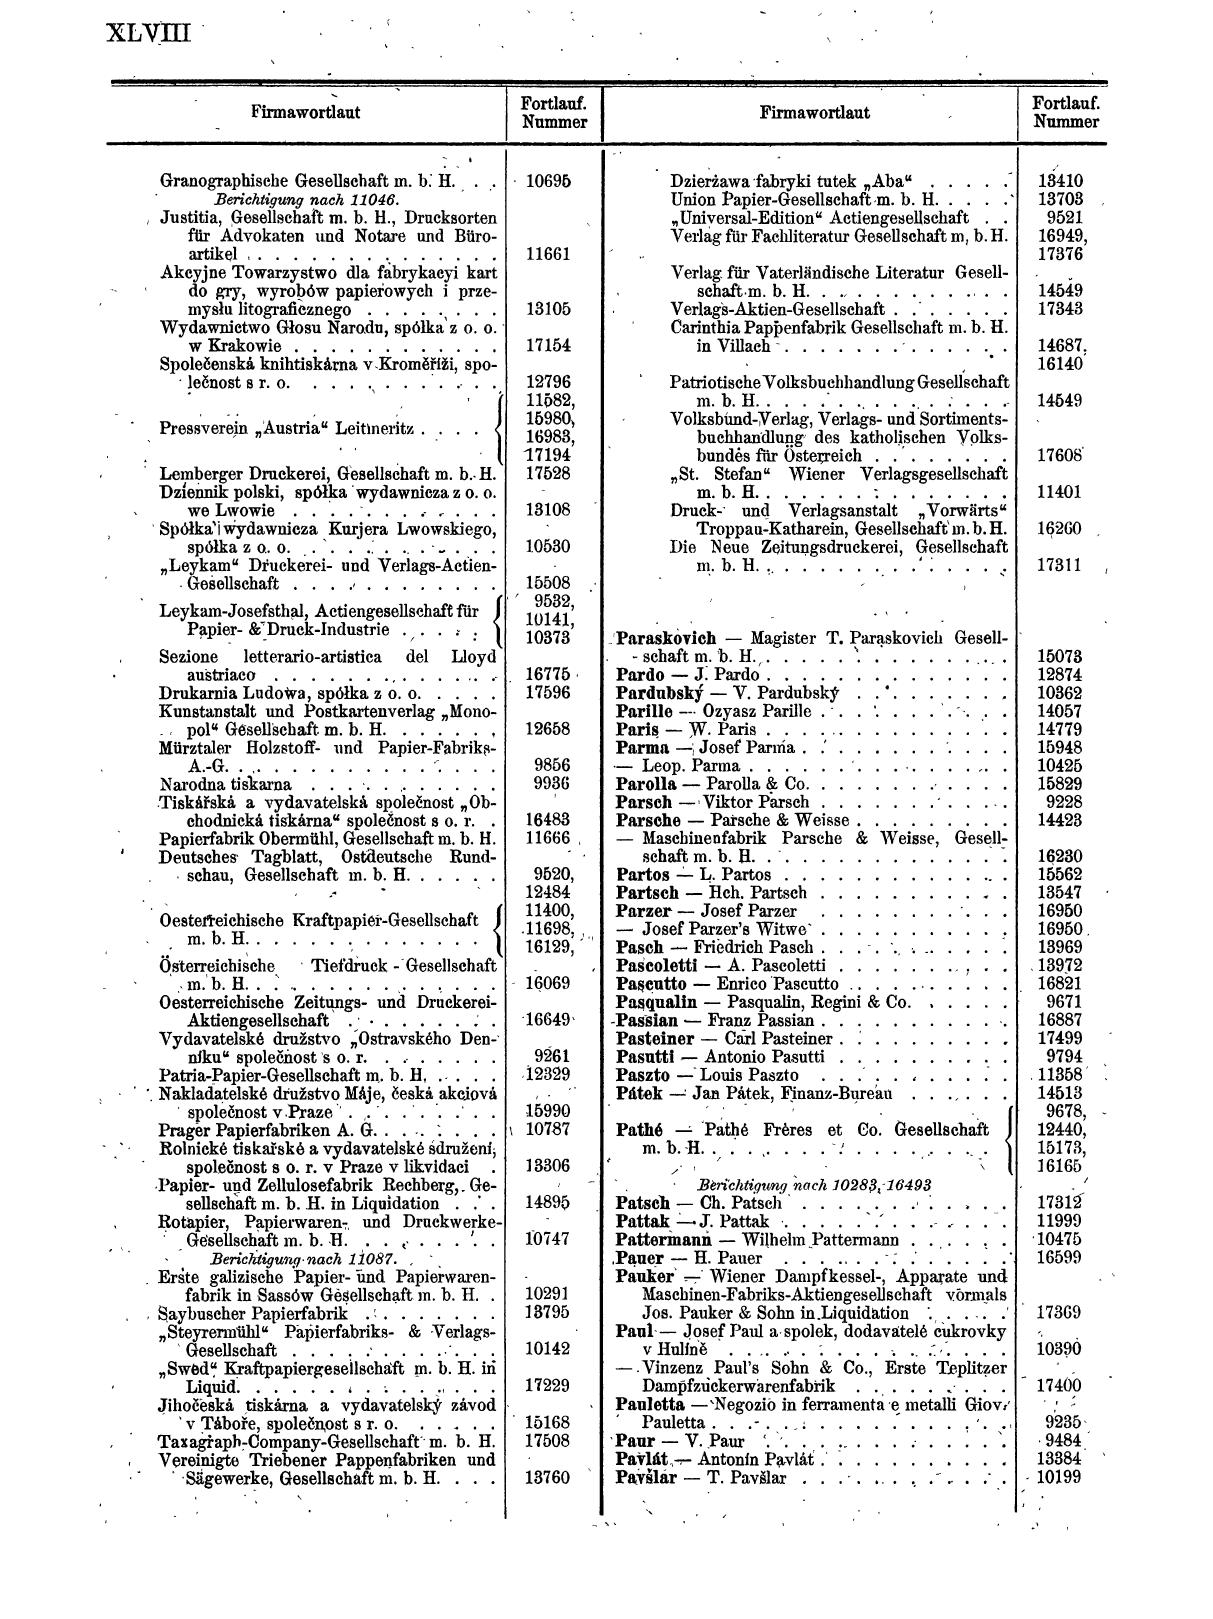 Zentralblatt für die Eintragungen in das Handelsregister 1913, Teil 2 - Seite 52